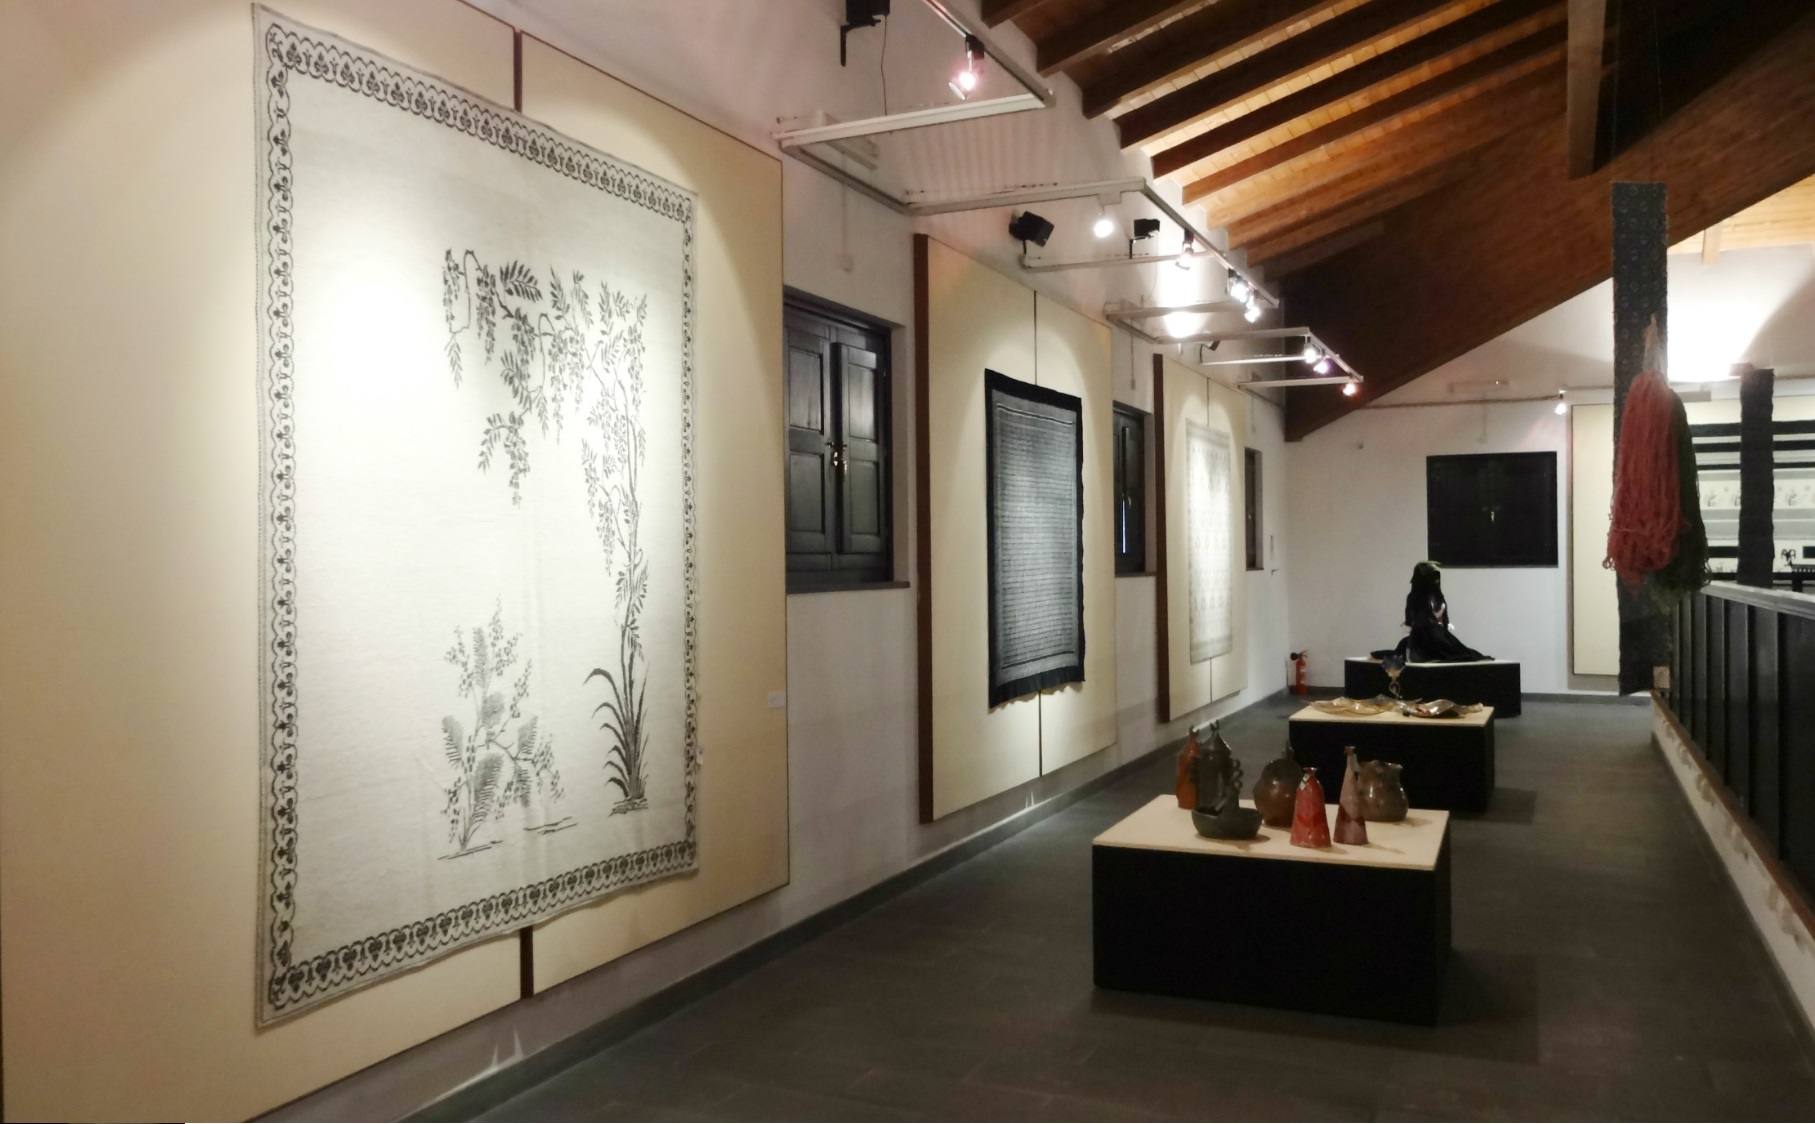 Tessingiu 50ª Mostra dell’Artigianato Sardo dal 15 luglio al 3 settembre 2017 presso il Museo MURATS di Samugheo